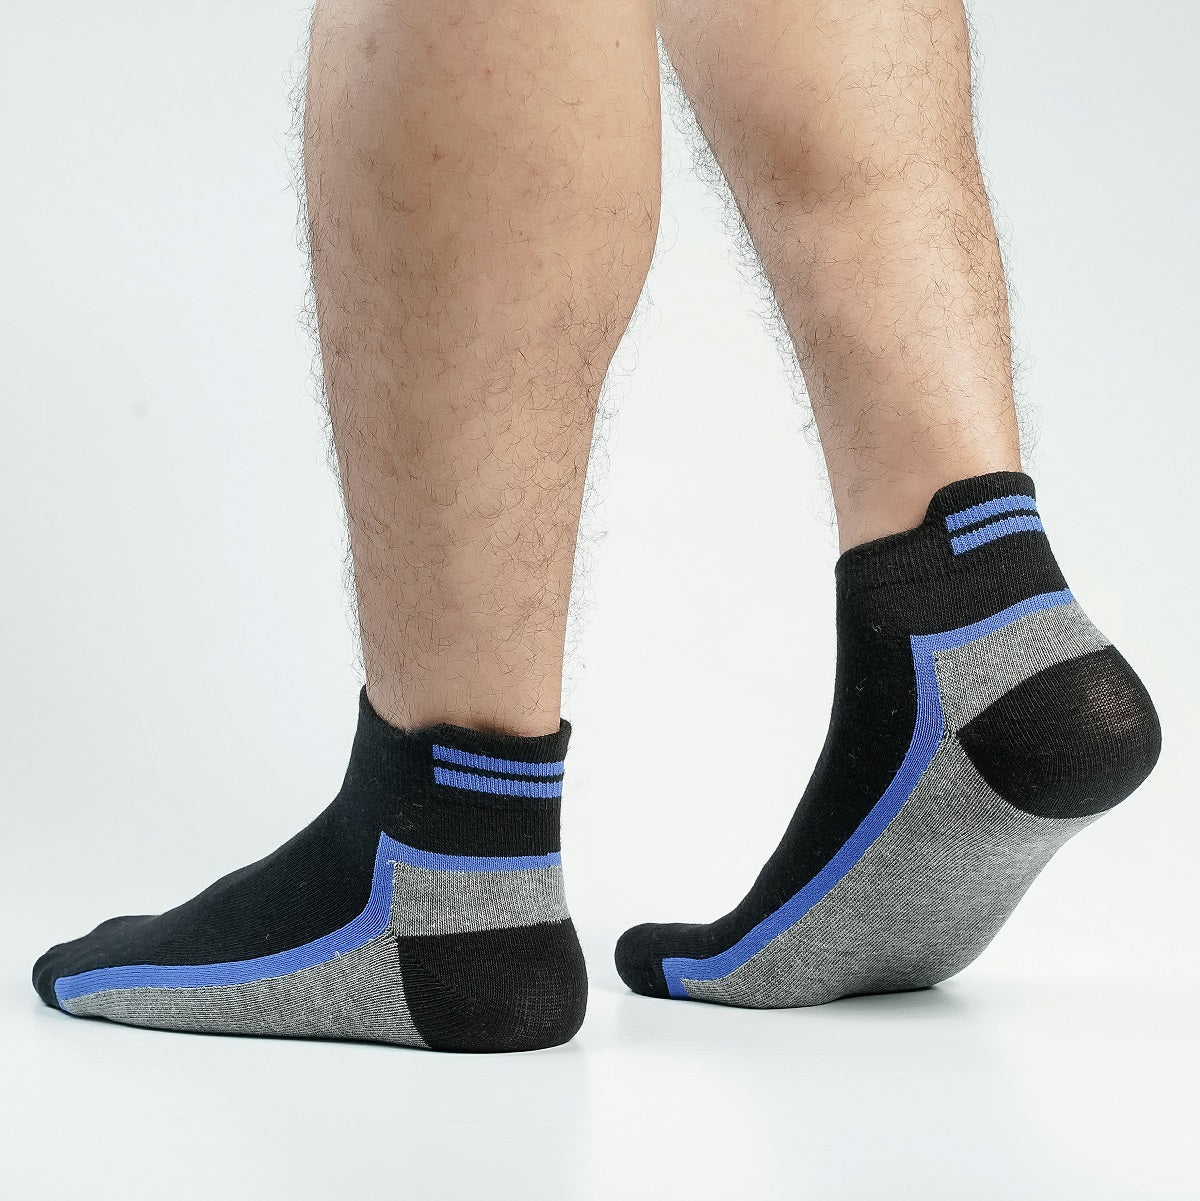 Pridezone Ankle Socks For Men